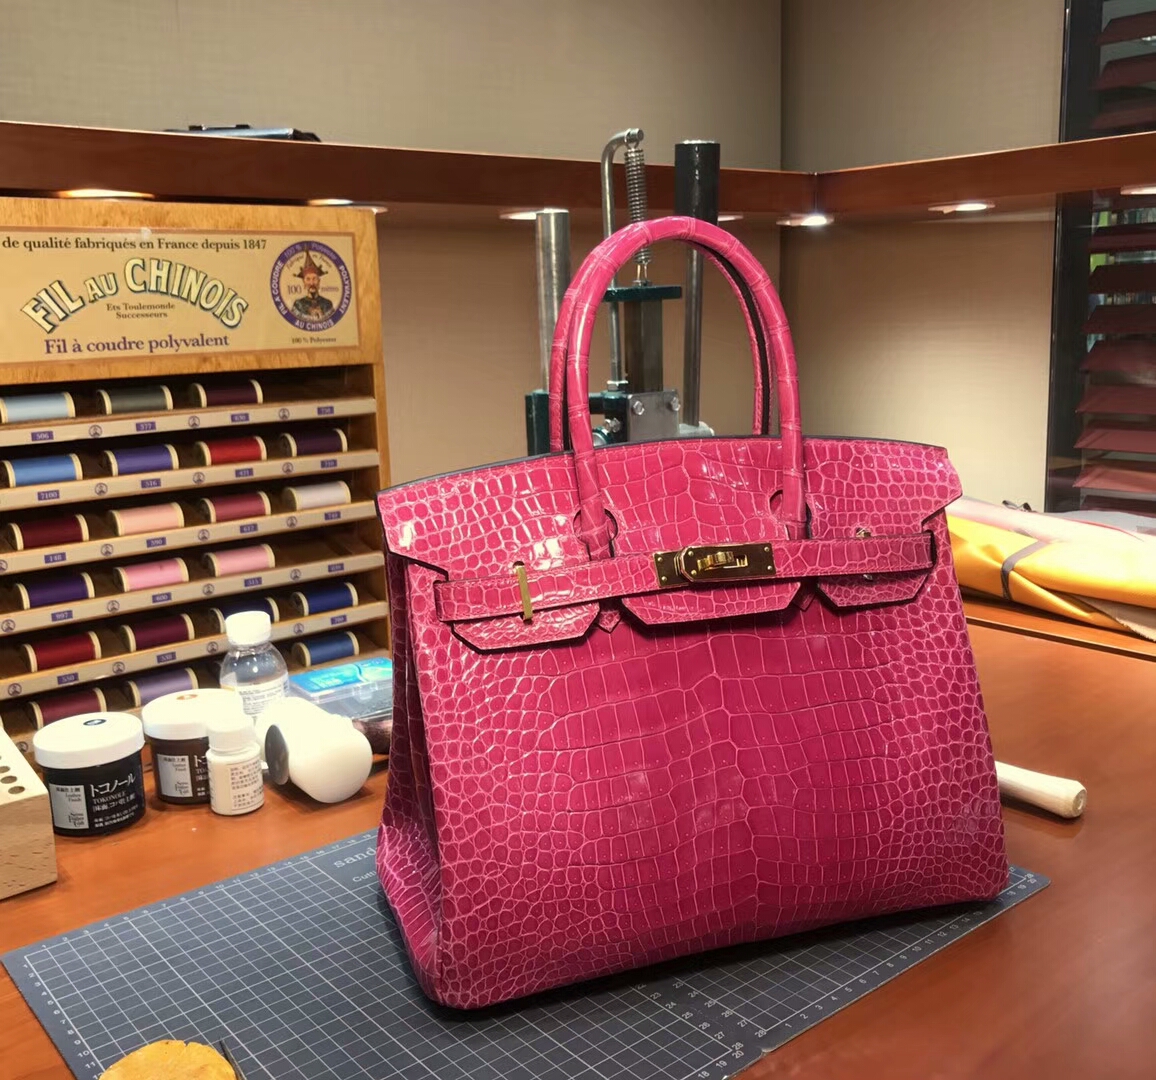 爱马仕 HERMES 铂金包 Birkin 配全套专柜原版包装 全球发售 5J 桃粉色 桃红色 fuschia pink